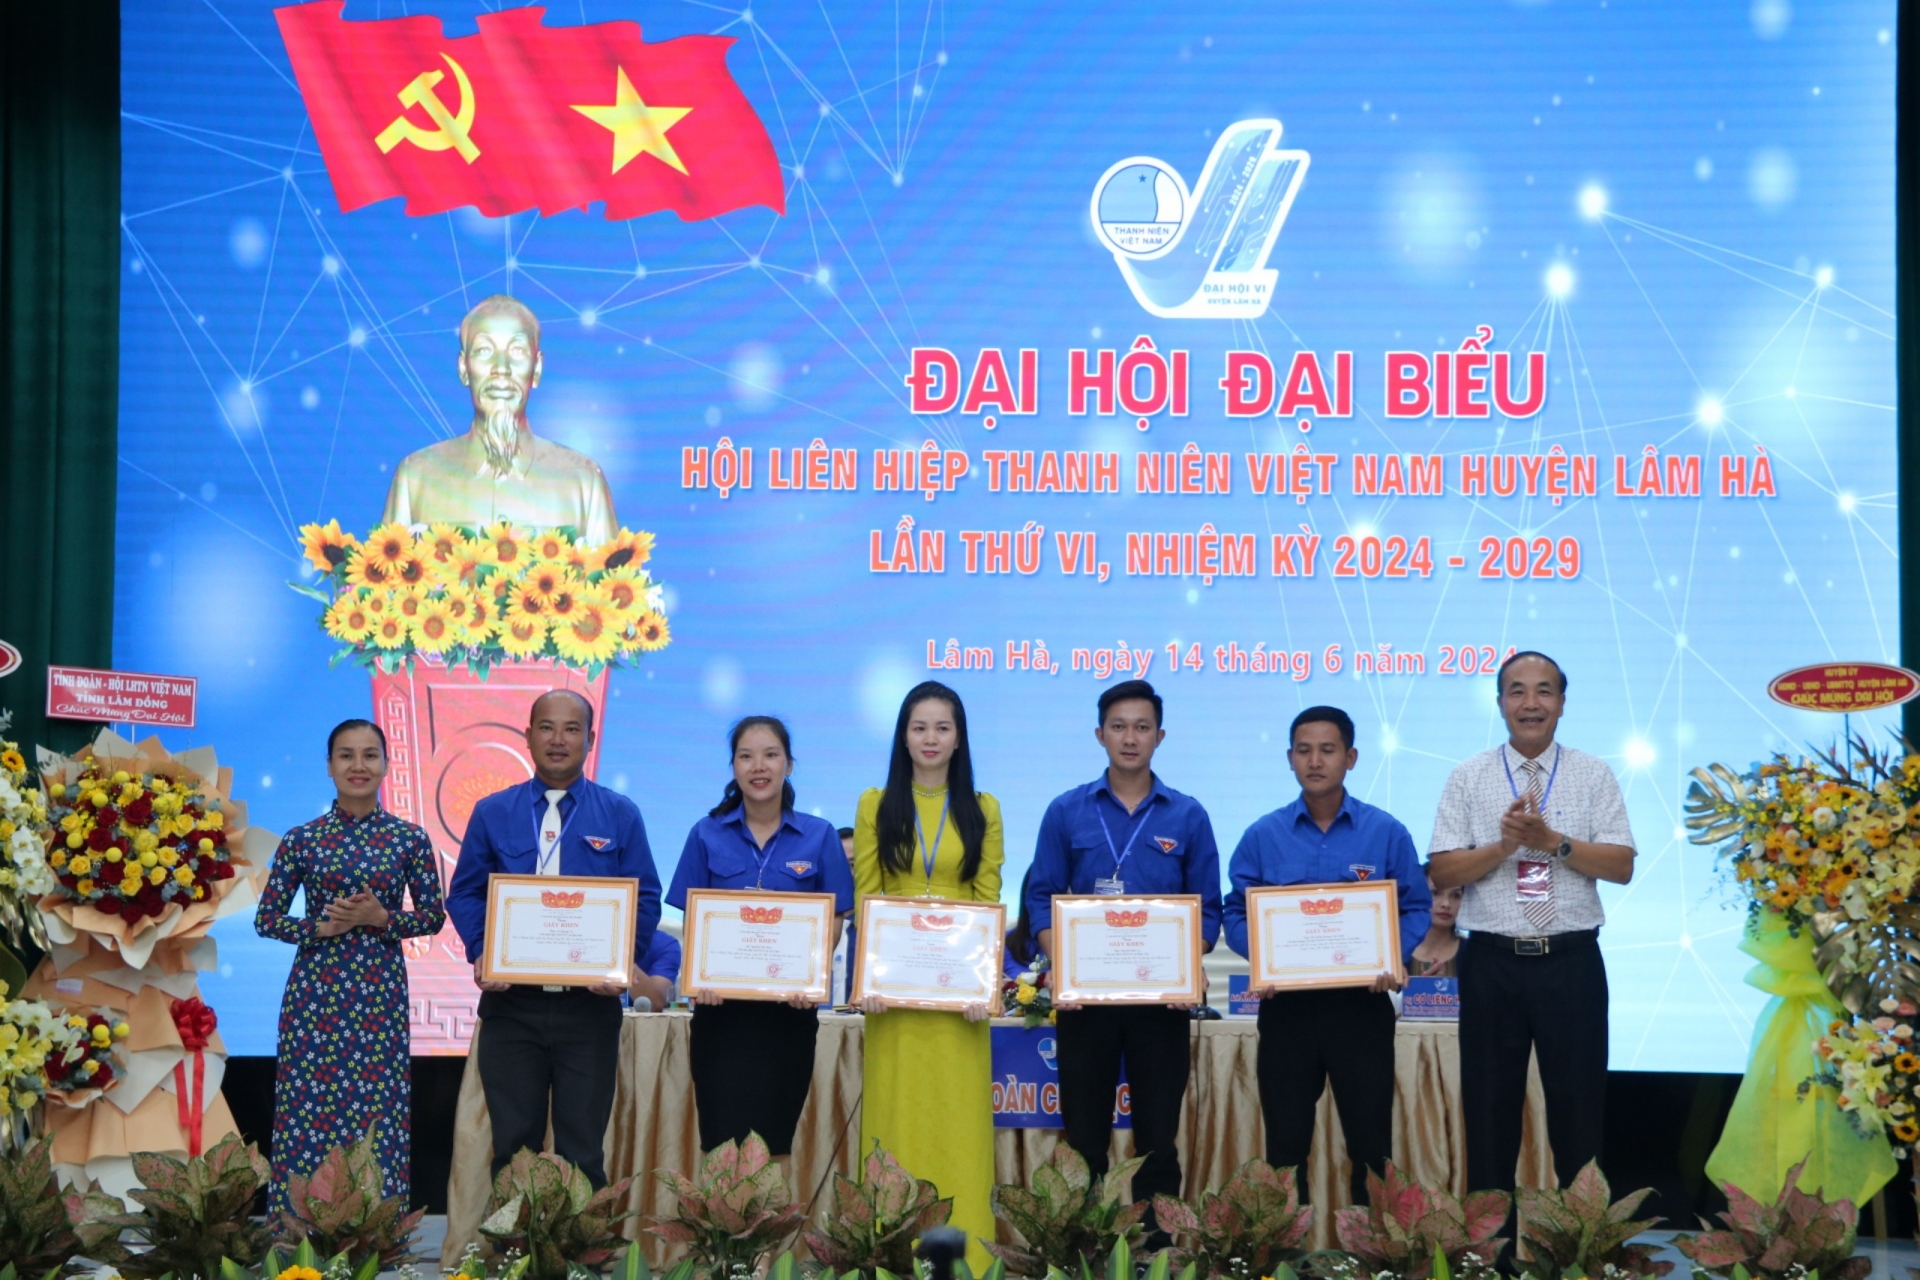 Trao giấy khen của UBND huyện Lâm Hà cho các cá nhân